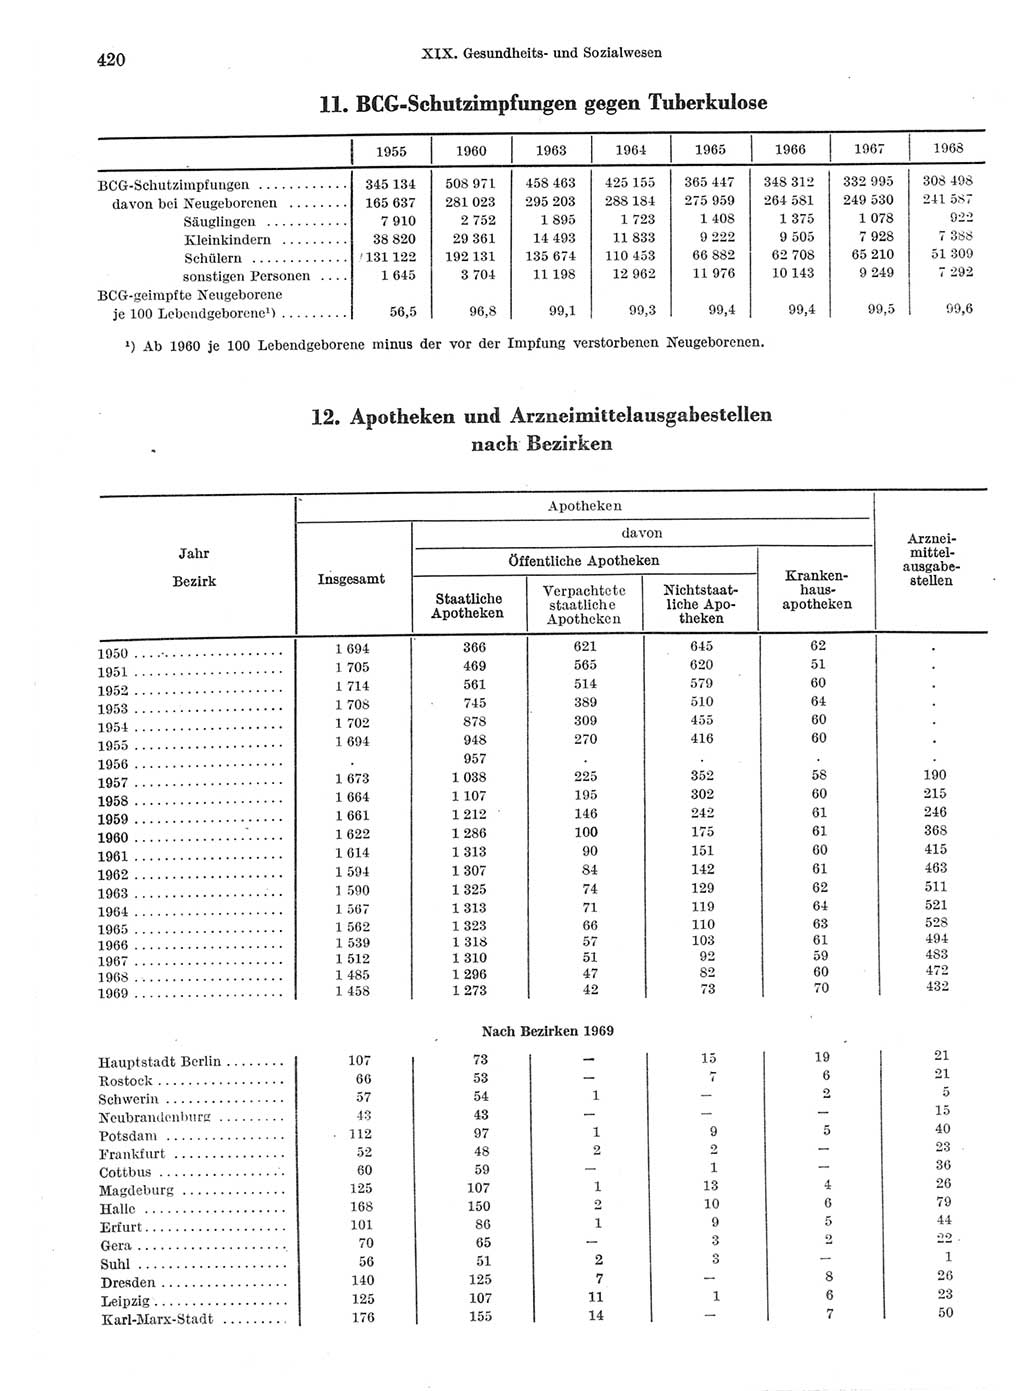 Statistisches Jahrbuch der Deutschen Demokratischen Republik (DDR) 1970, Seite 420 (Stat. Jb. DDR 1970, S. 420)